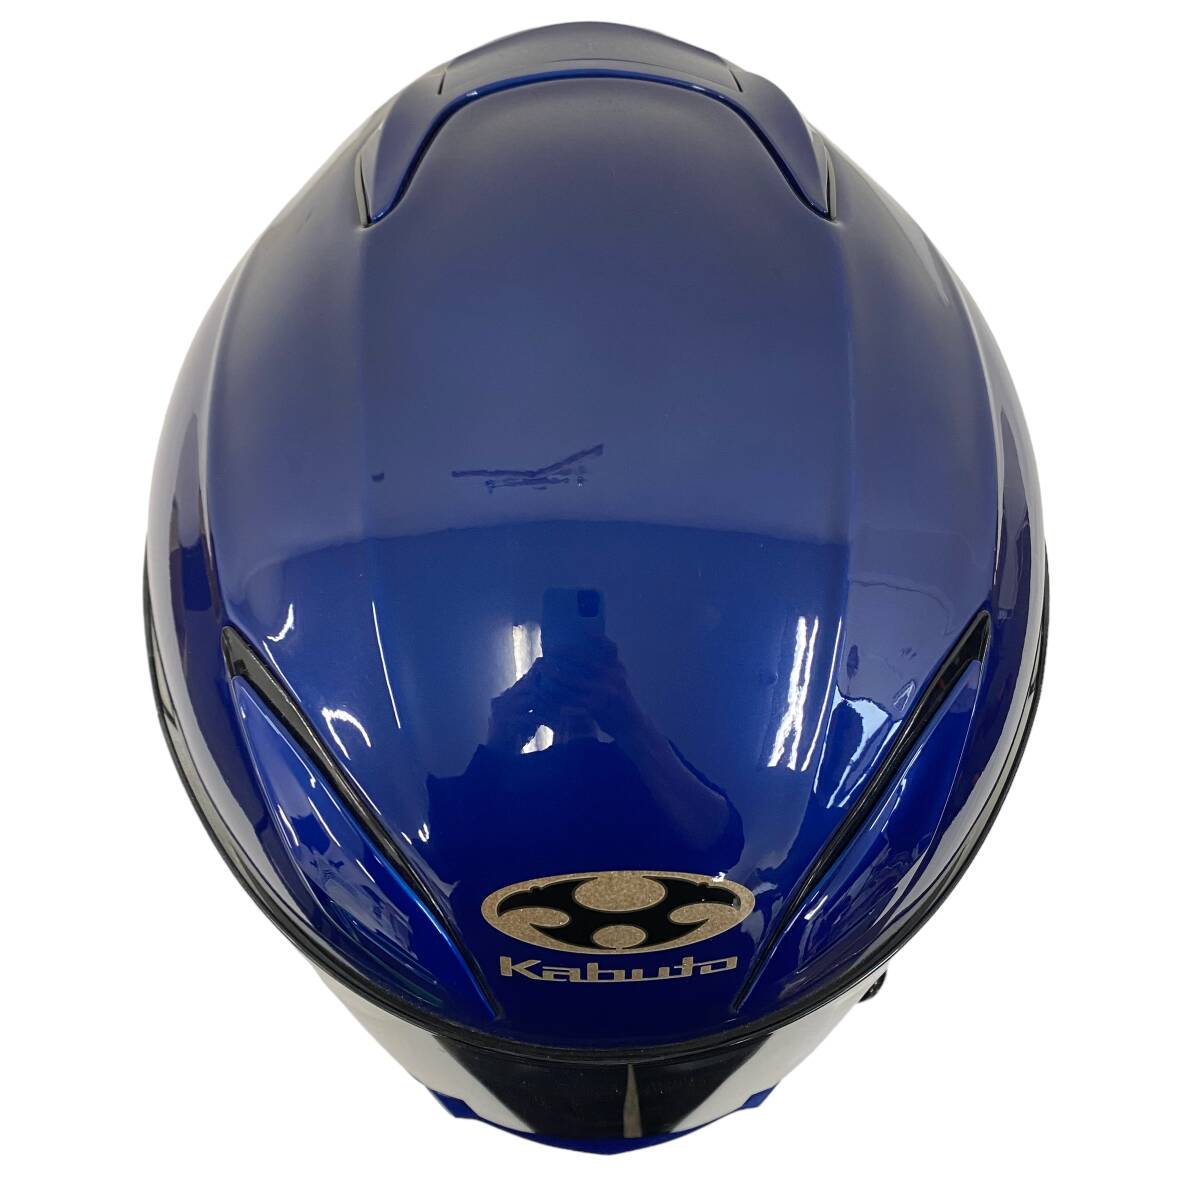 [ быстрое решение ] OGK оттенок голубого синий серия XL(61~62cm) 7889-100